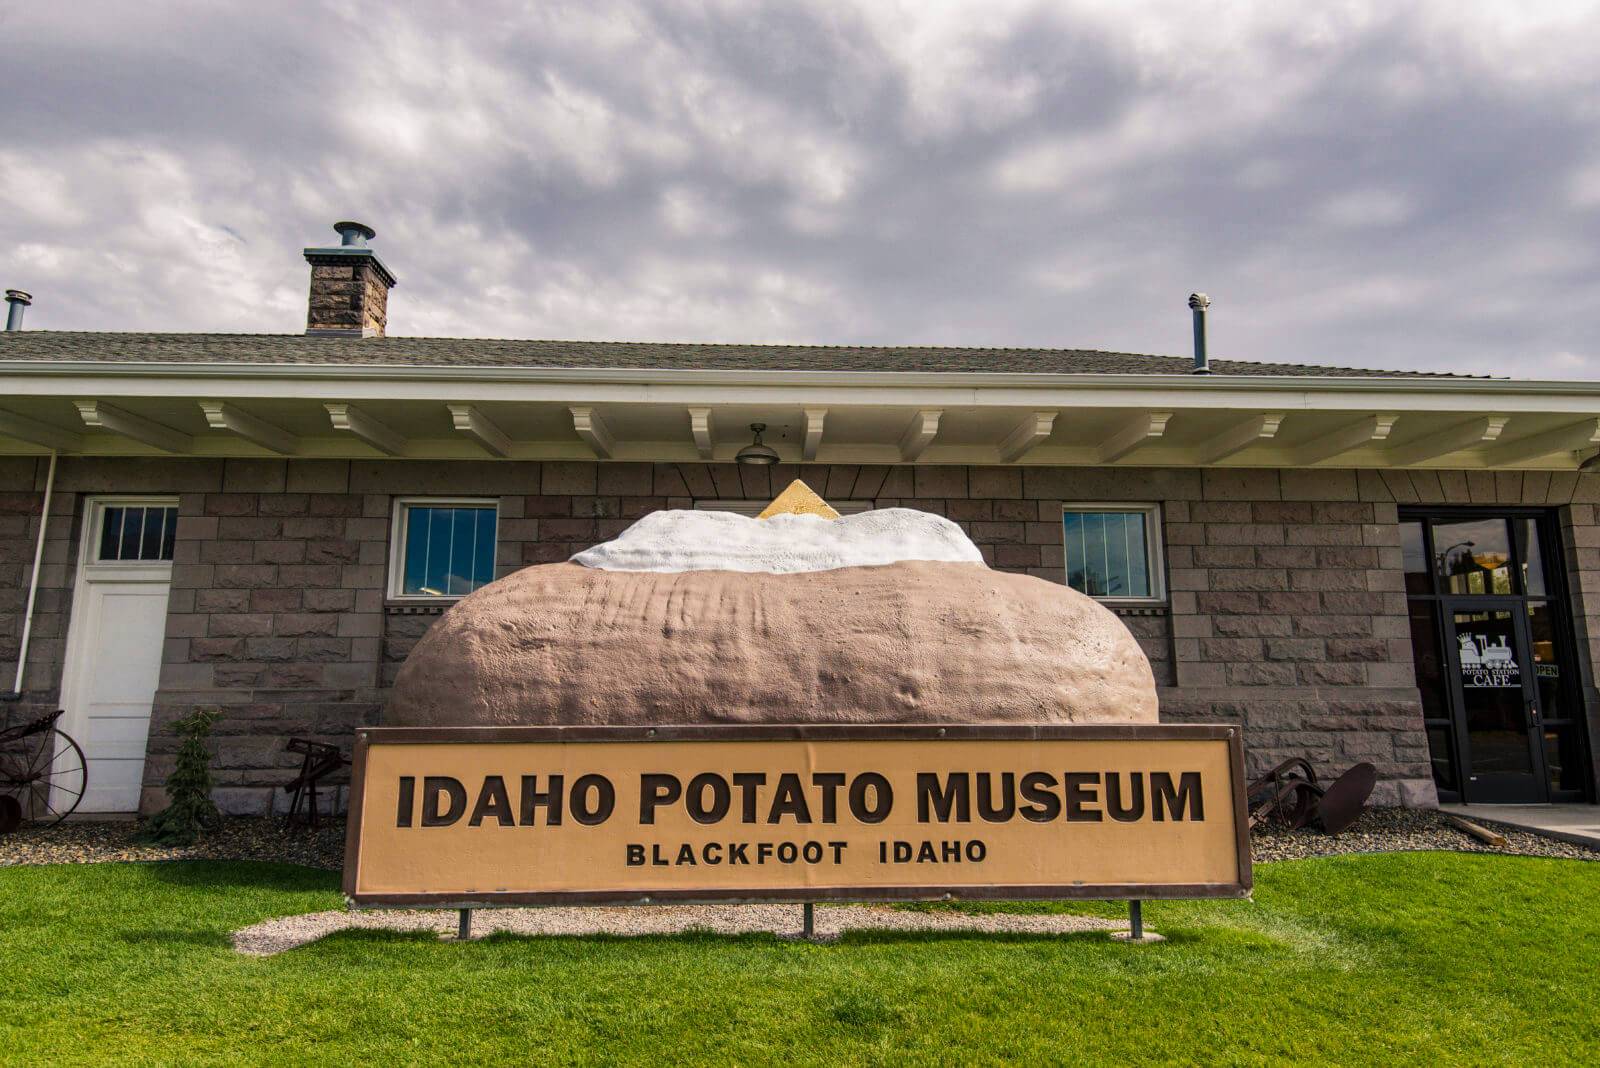 A giant potato outside the Idaho Potato Museum.